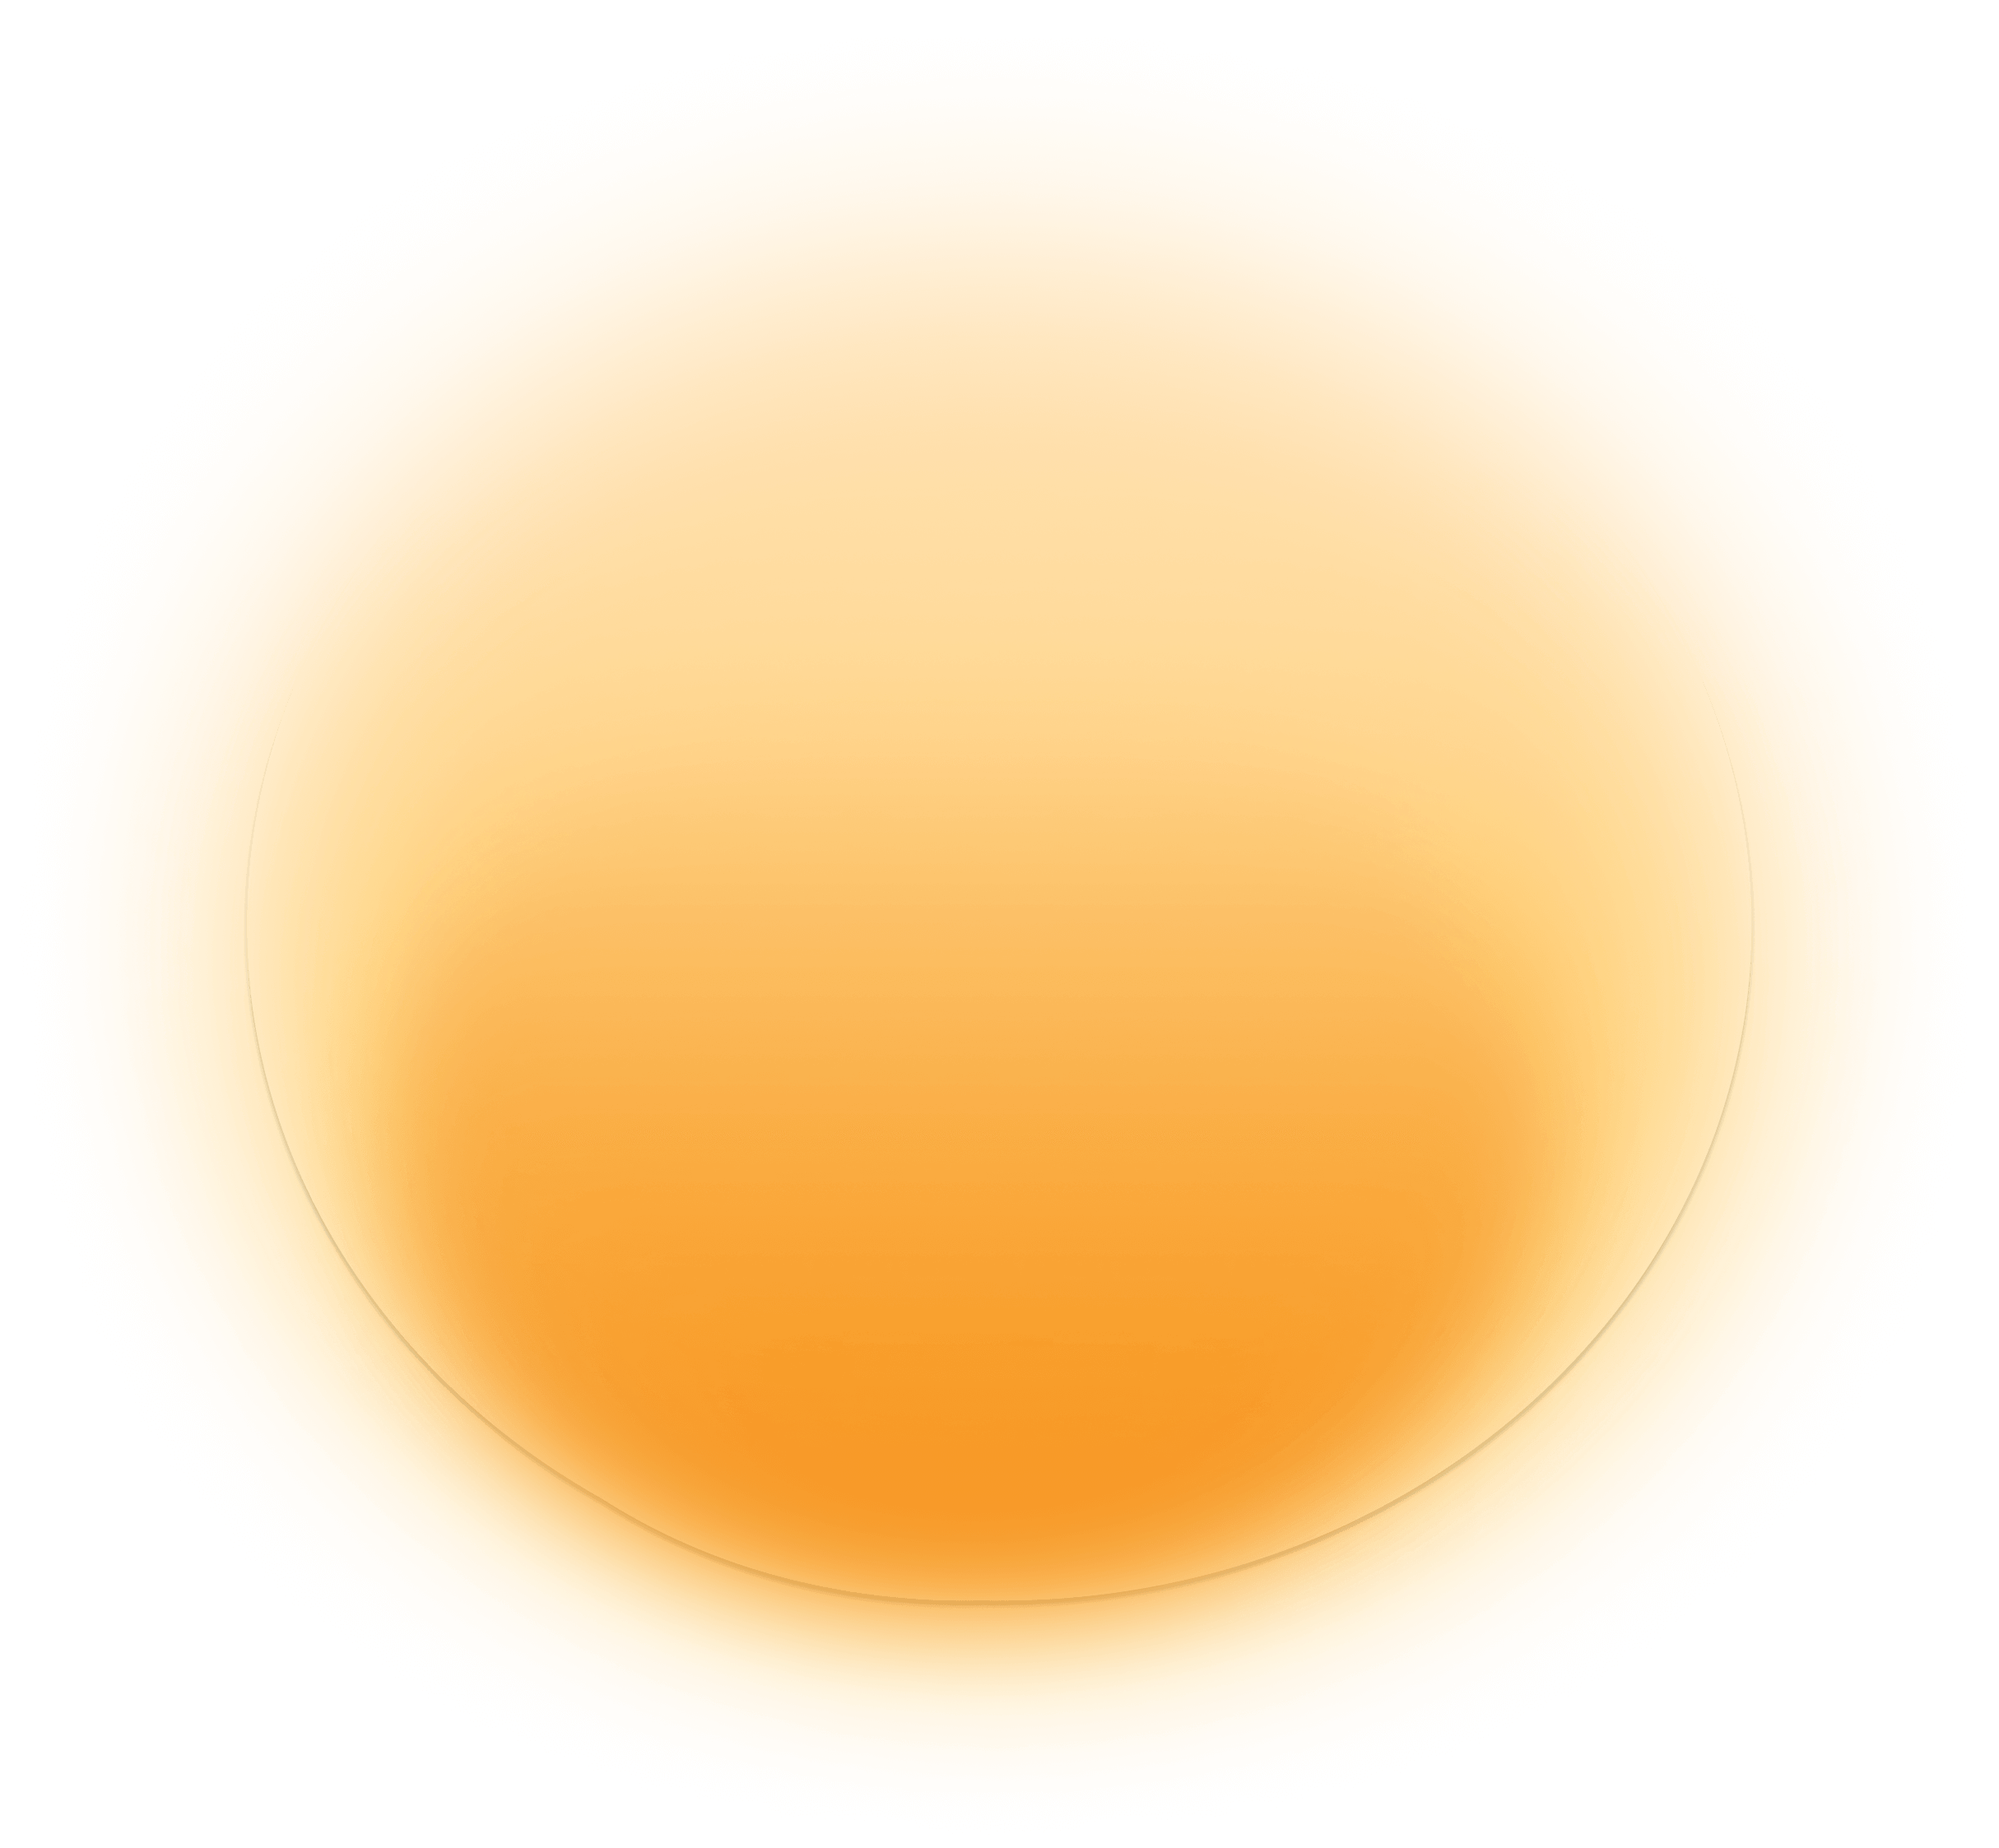 orange-circle